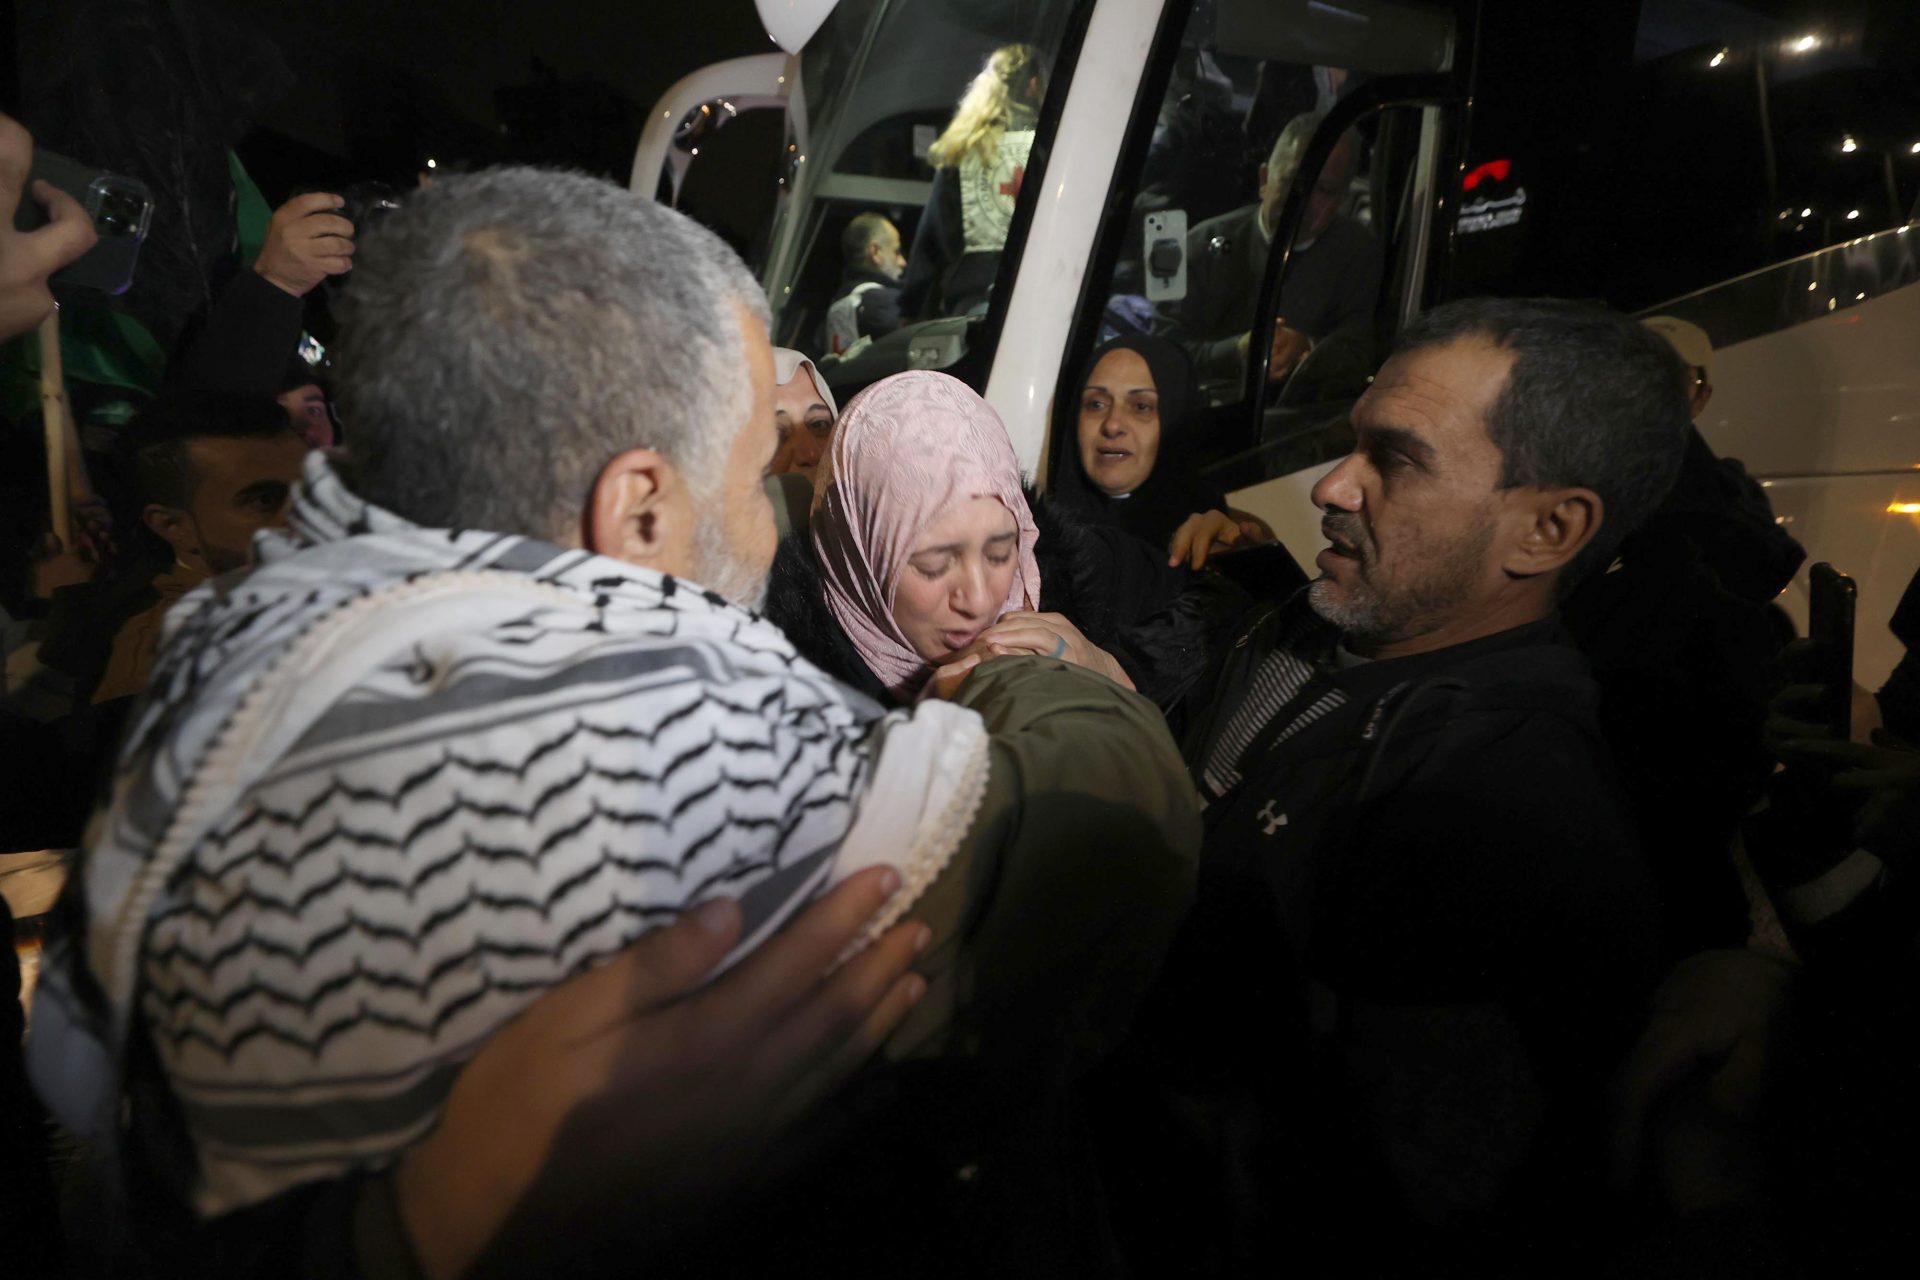 Fouille humiliante et menace de viol contre des Palestiniennes détenues